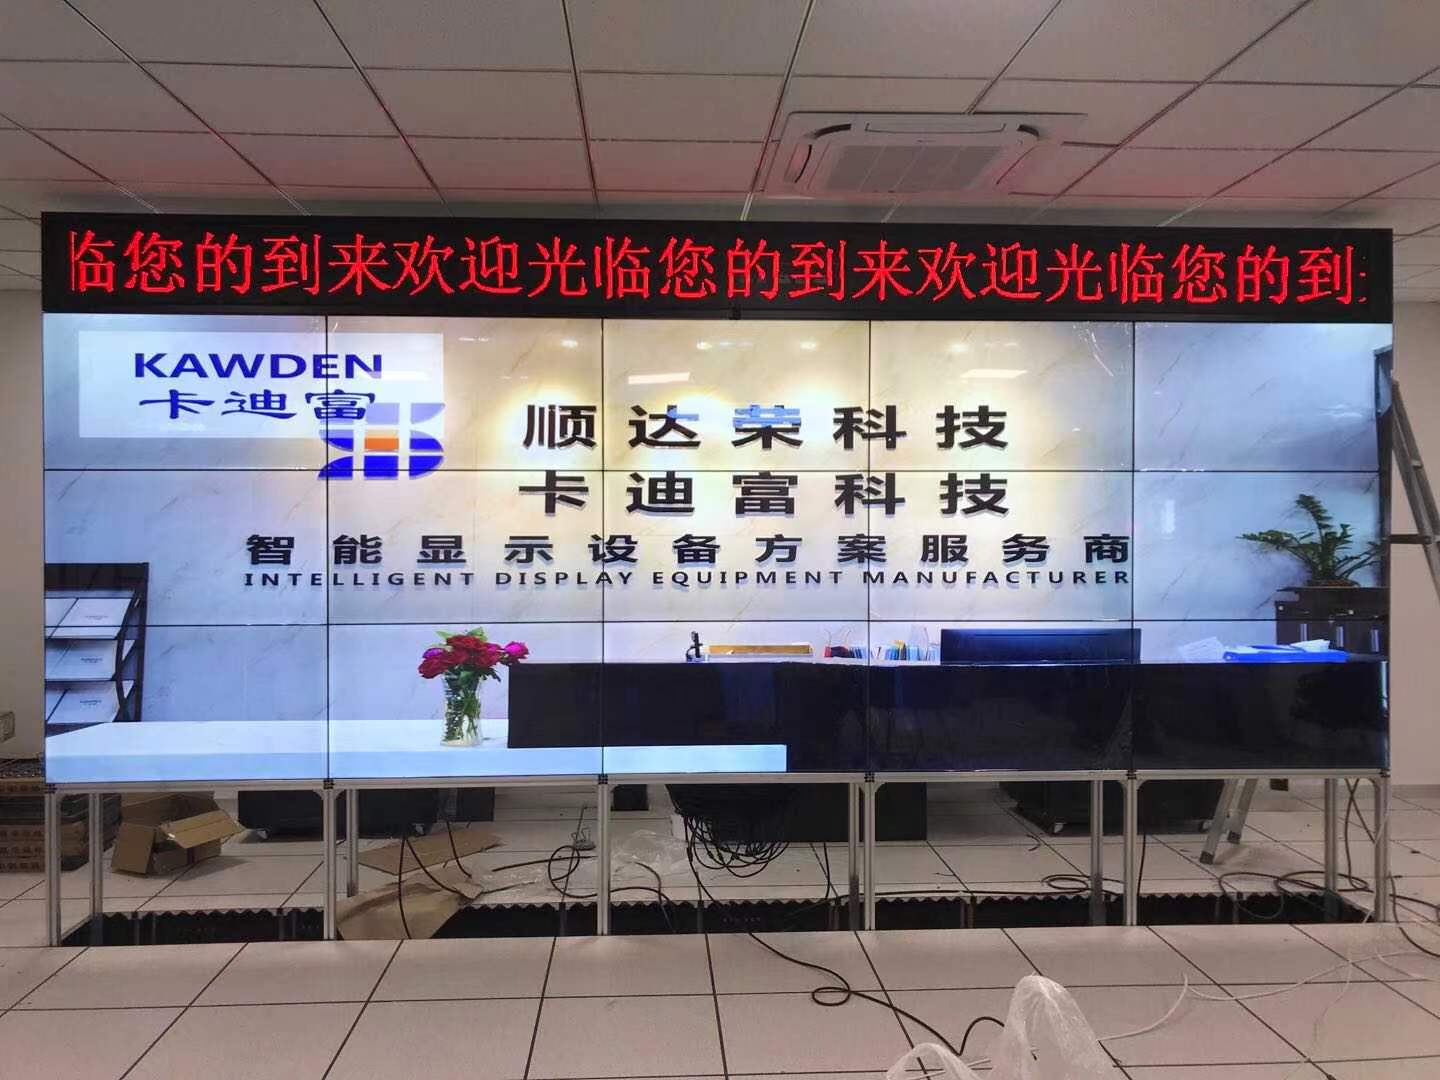 西安新能源汽车公司安防监控大屏幕拼接展示